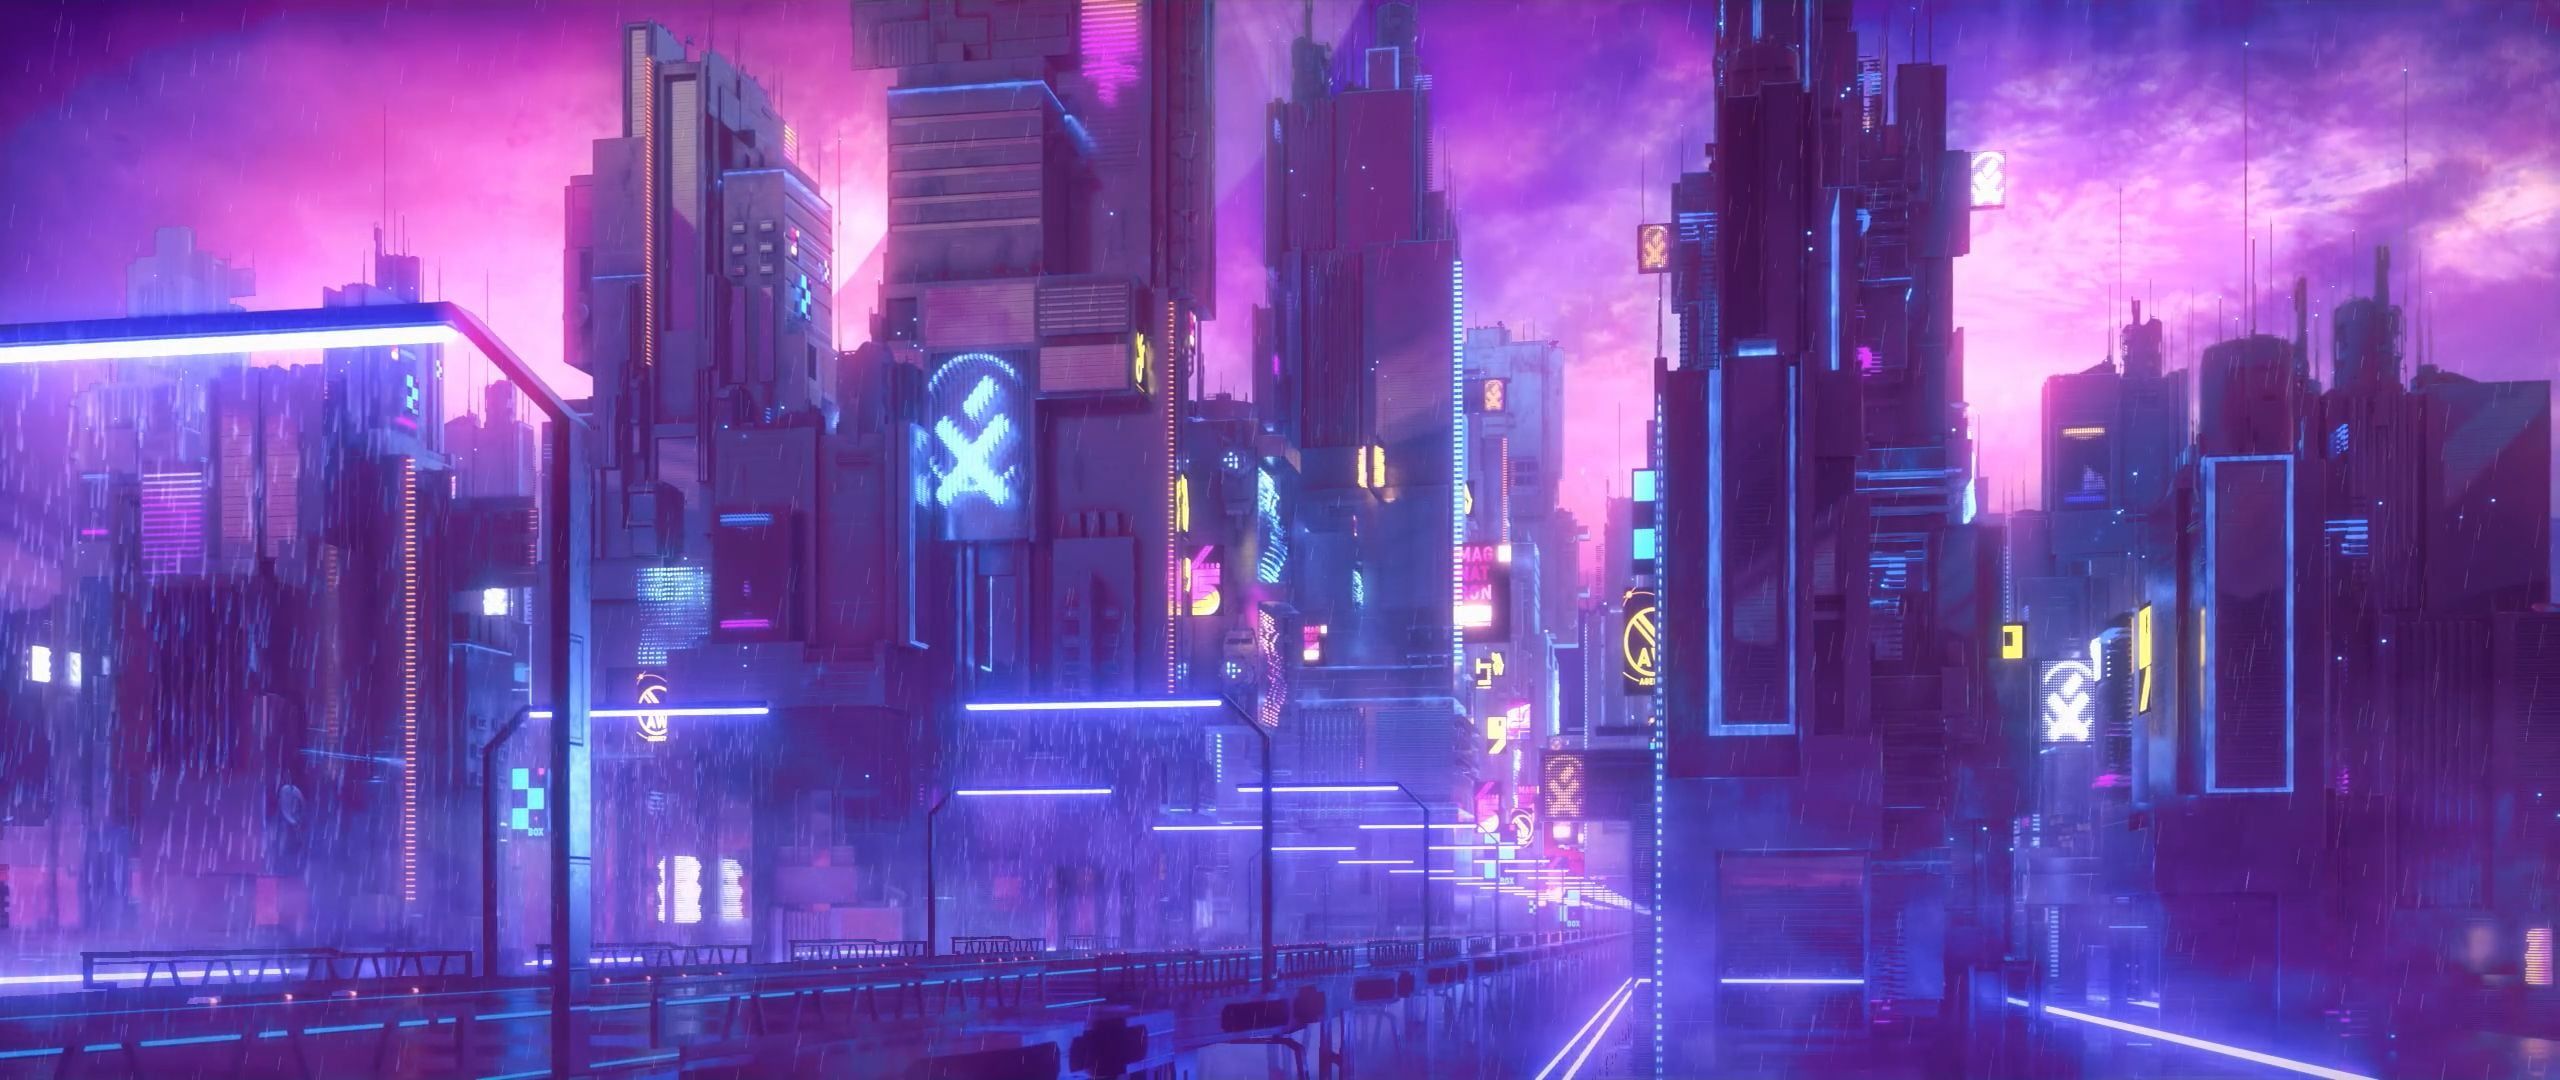 Tải hình nền đô thị kỹ thuật số cyberpunk neon 2K để trải nghiệm không gian đô thị đầy tính khoa học viễn tưởng của tương lai. Đầy sức hút và phá cách, hình nền này sẽ đem đến cho bạn một trải nghiệm hoàn toàn mới lạ.